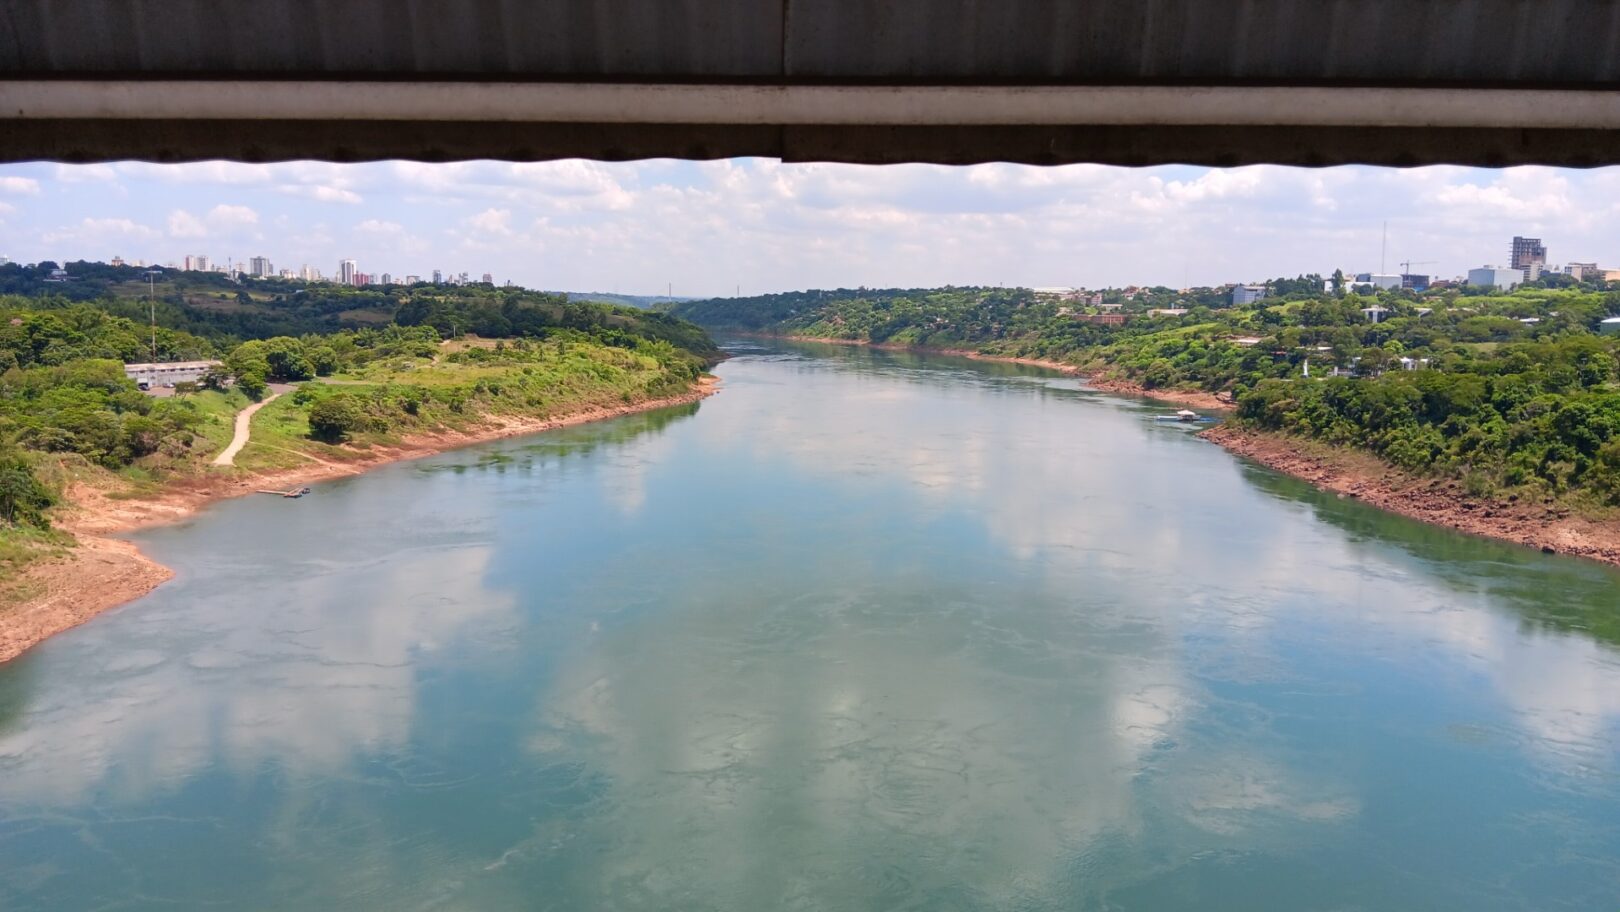 Crossing Puente Internacional de la Amistad, Puente Internacional de la Amistad, from Paraguay to Brazil